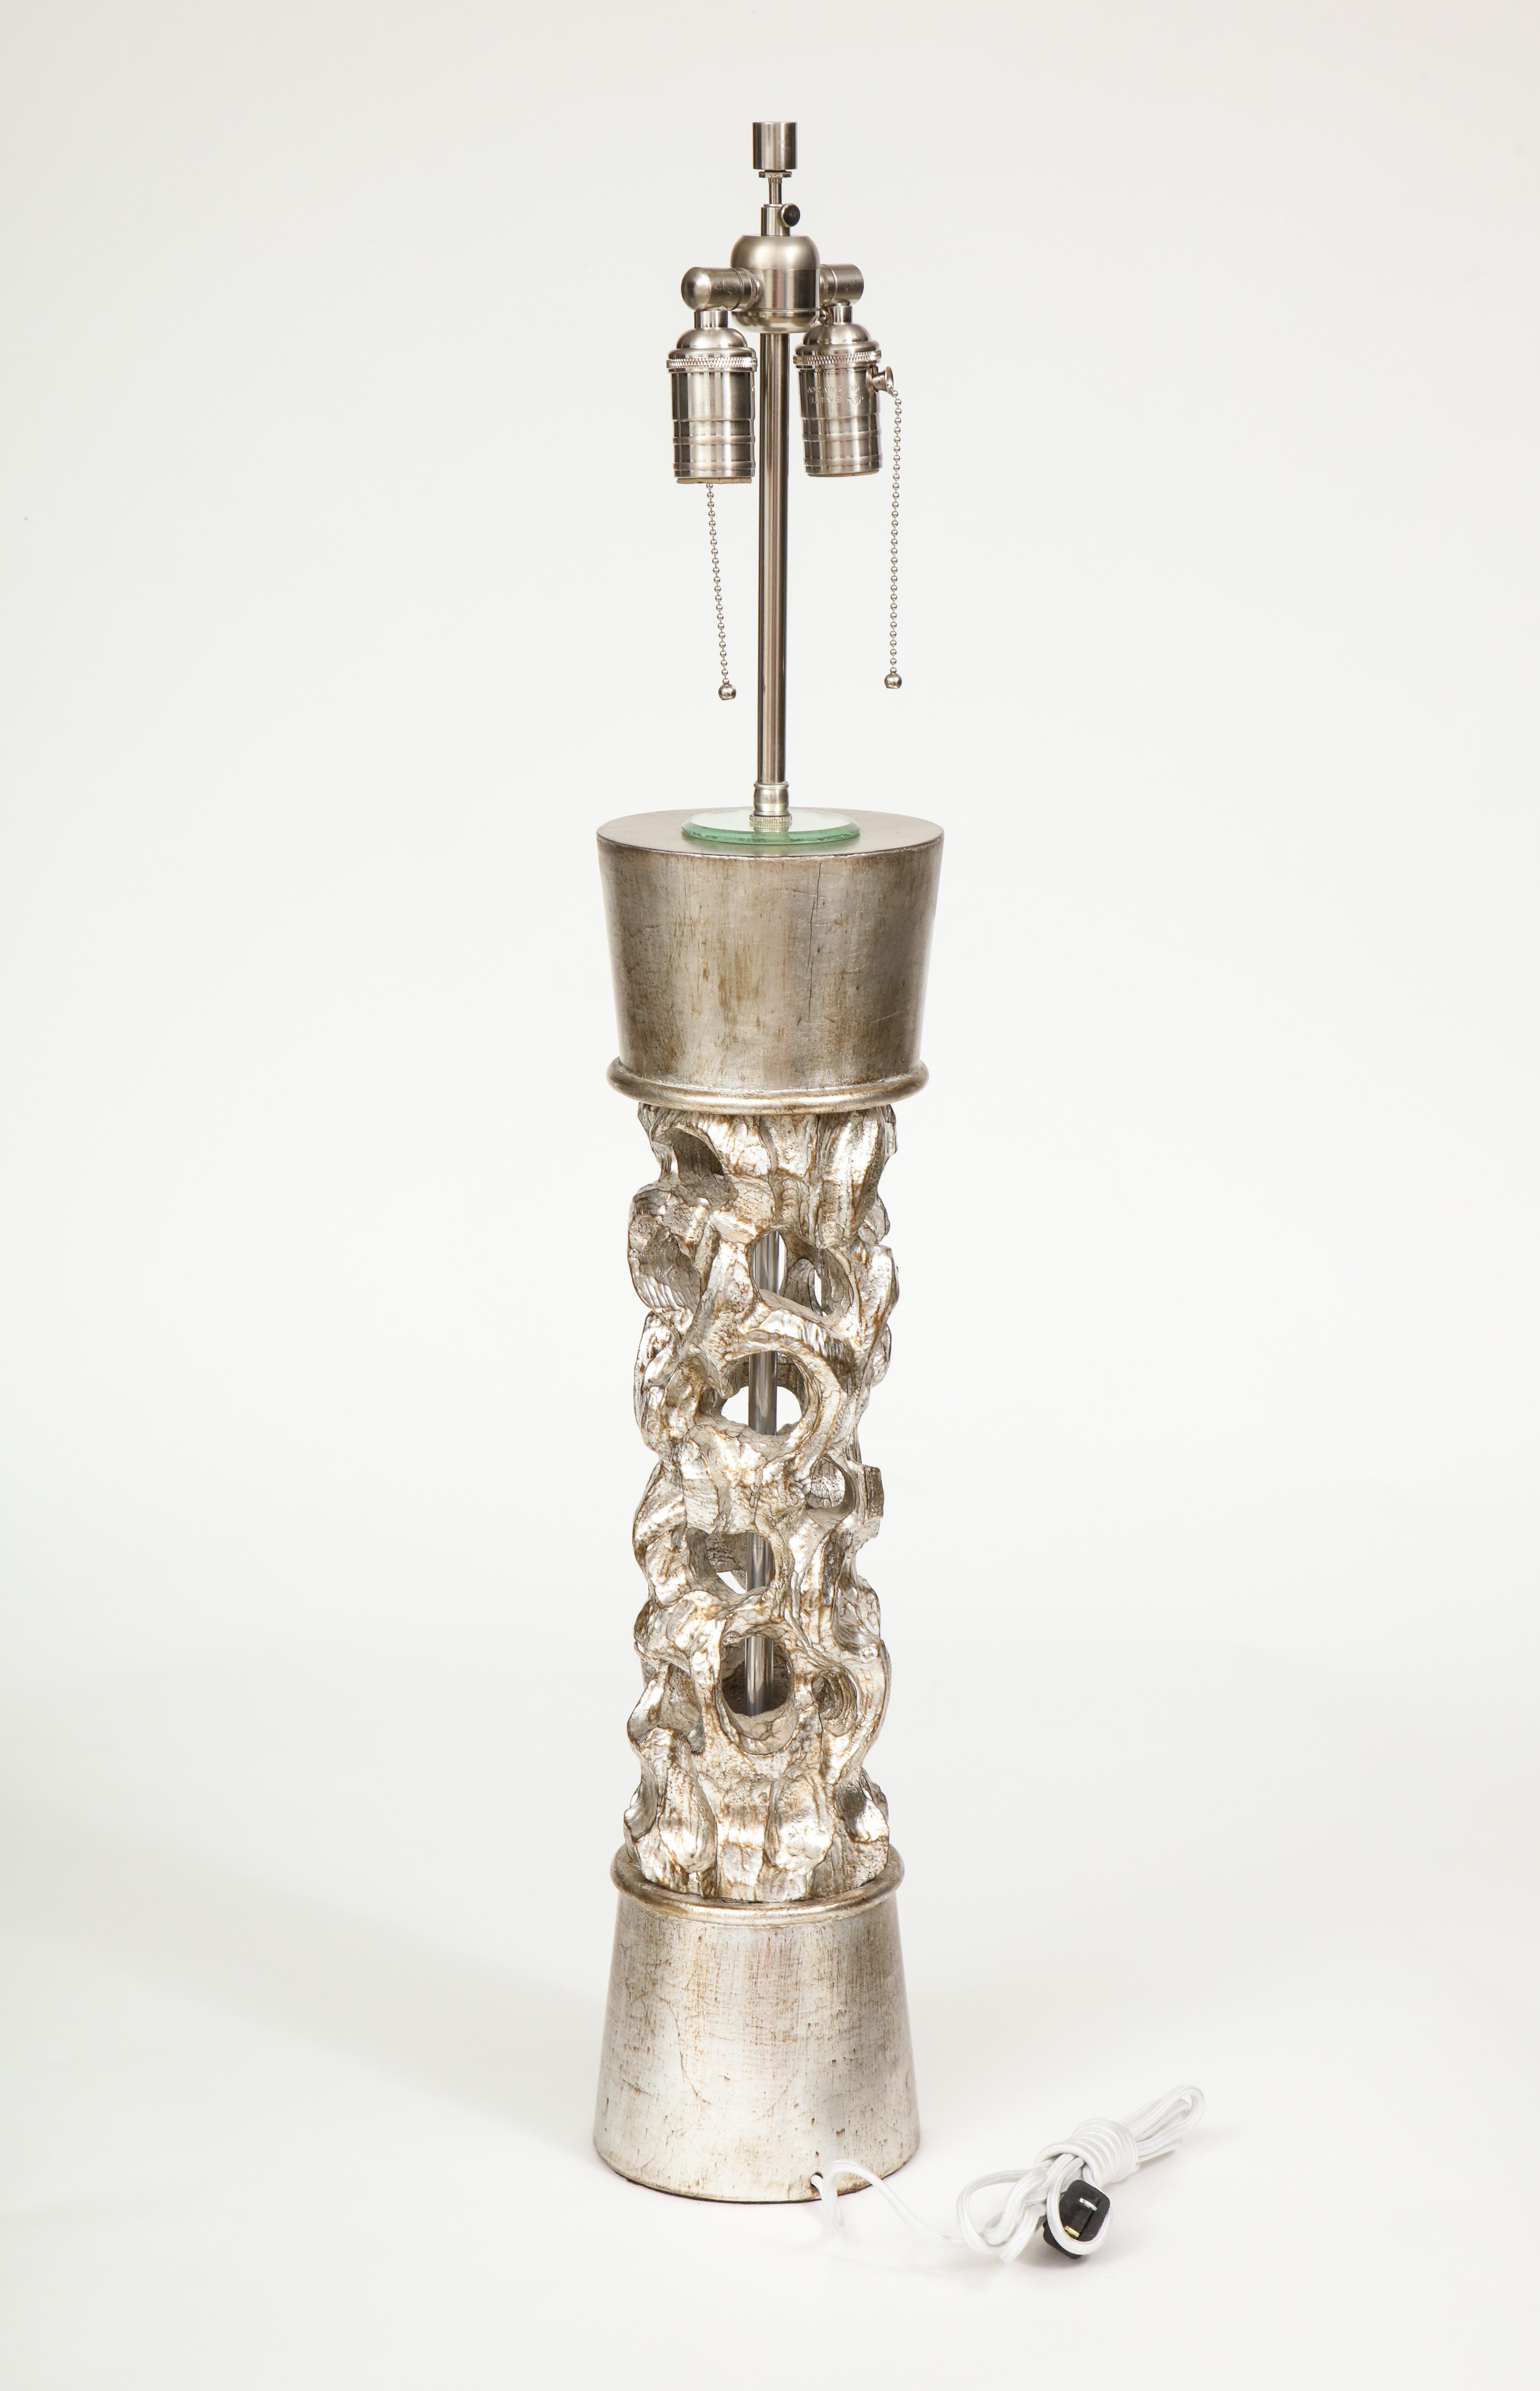 Lampe à colonne en bois sculpté exquis avec une finition en feuille d'argent par James Mont. Recâblé pour une utilisation aux Etats-Unis. 60W max chaque prise.